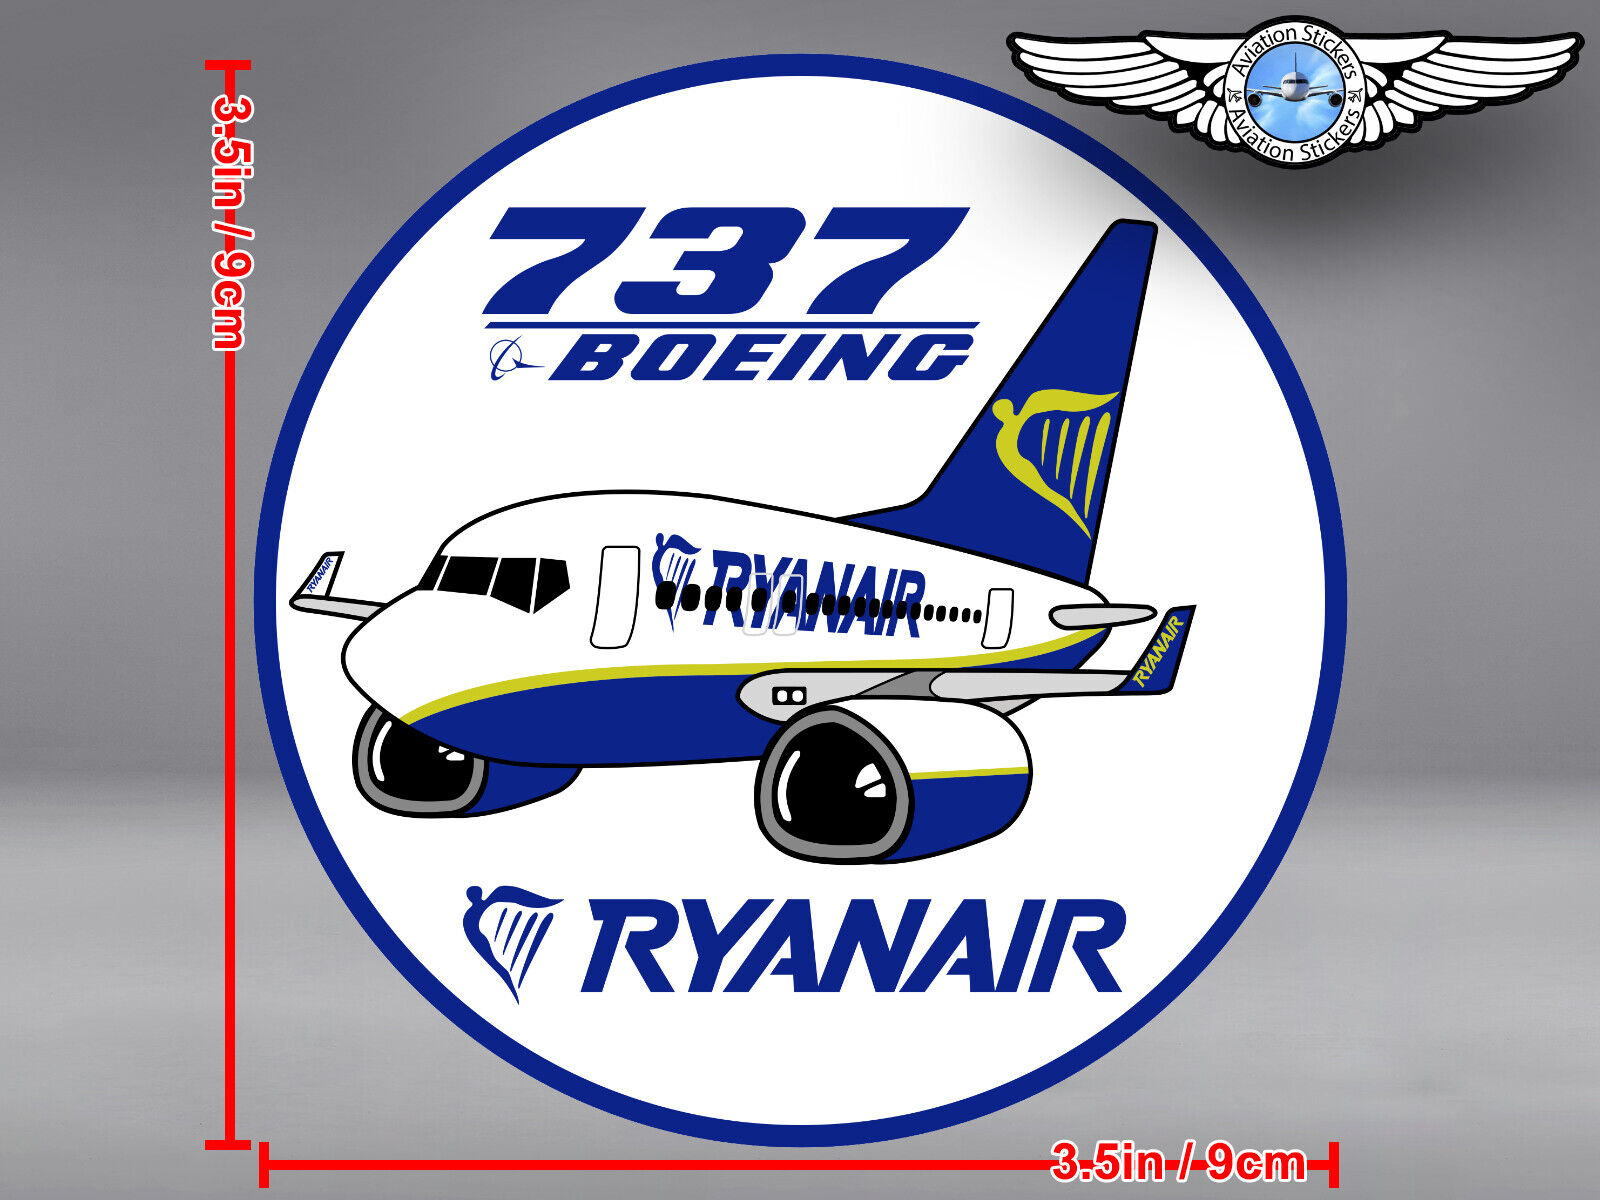 RYANAIR RYAN AIR PUDGY BOEING B 737 B737 ROUND DECAL / STICKER